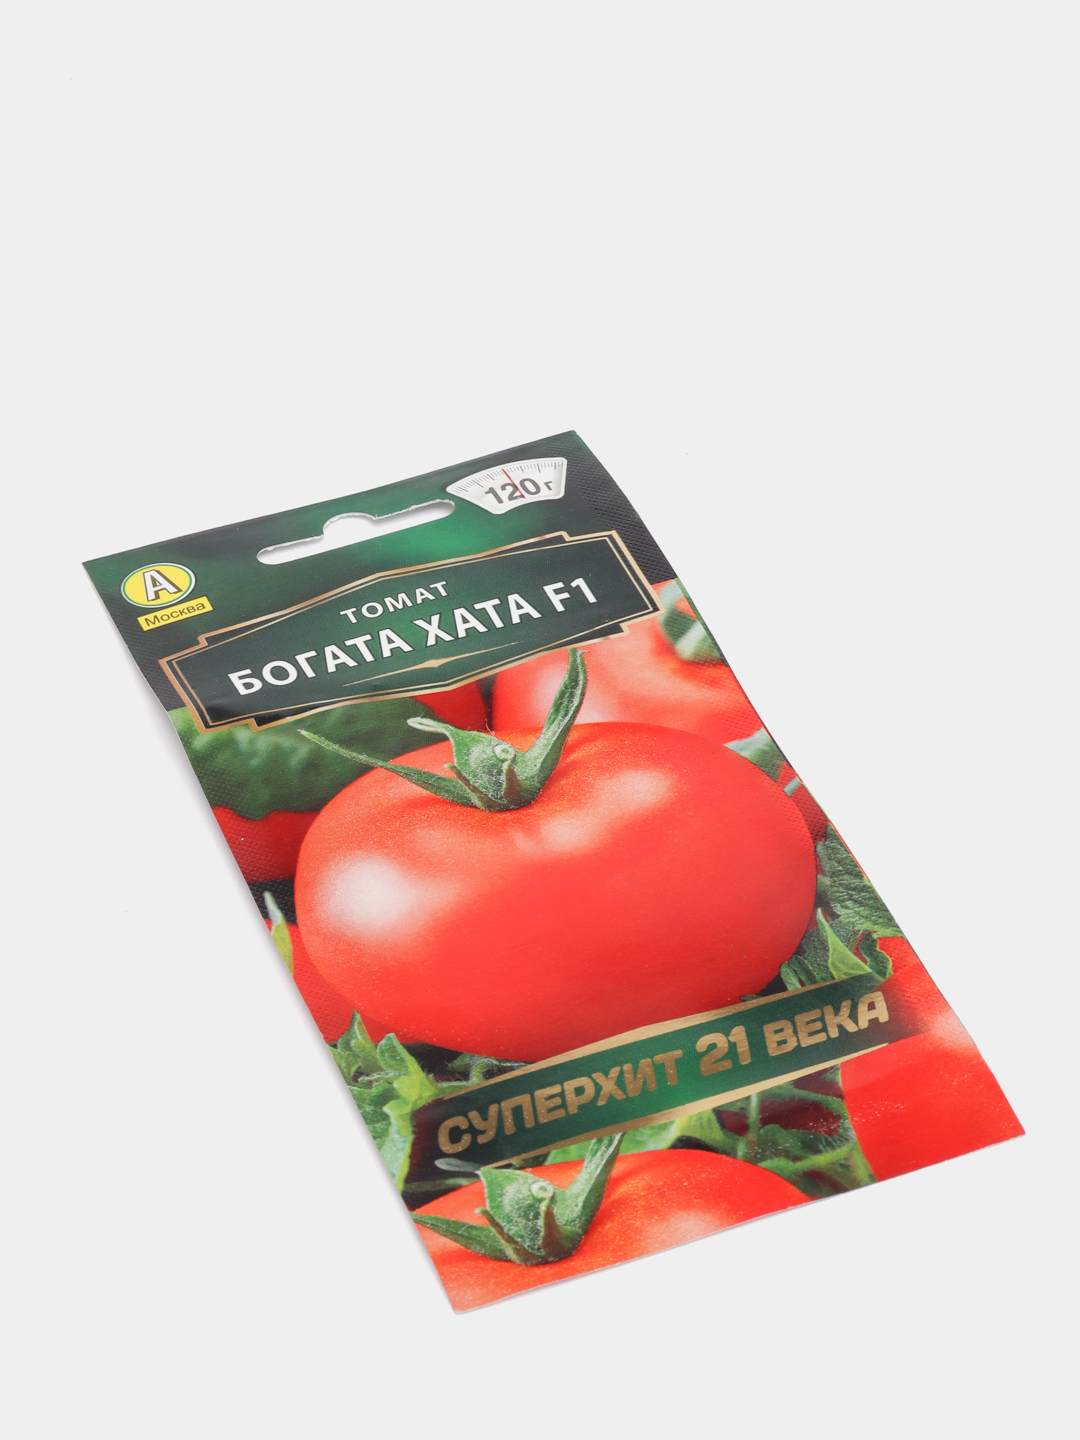 Сорт помидор богата хата